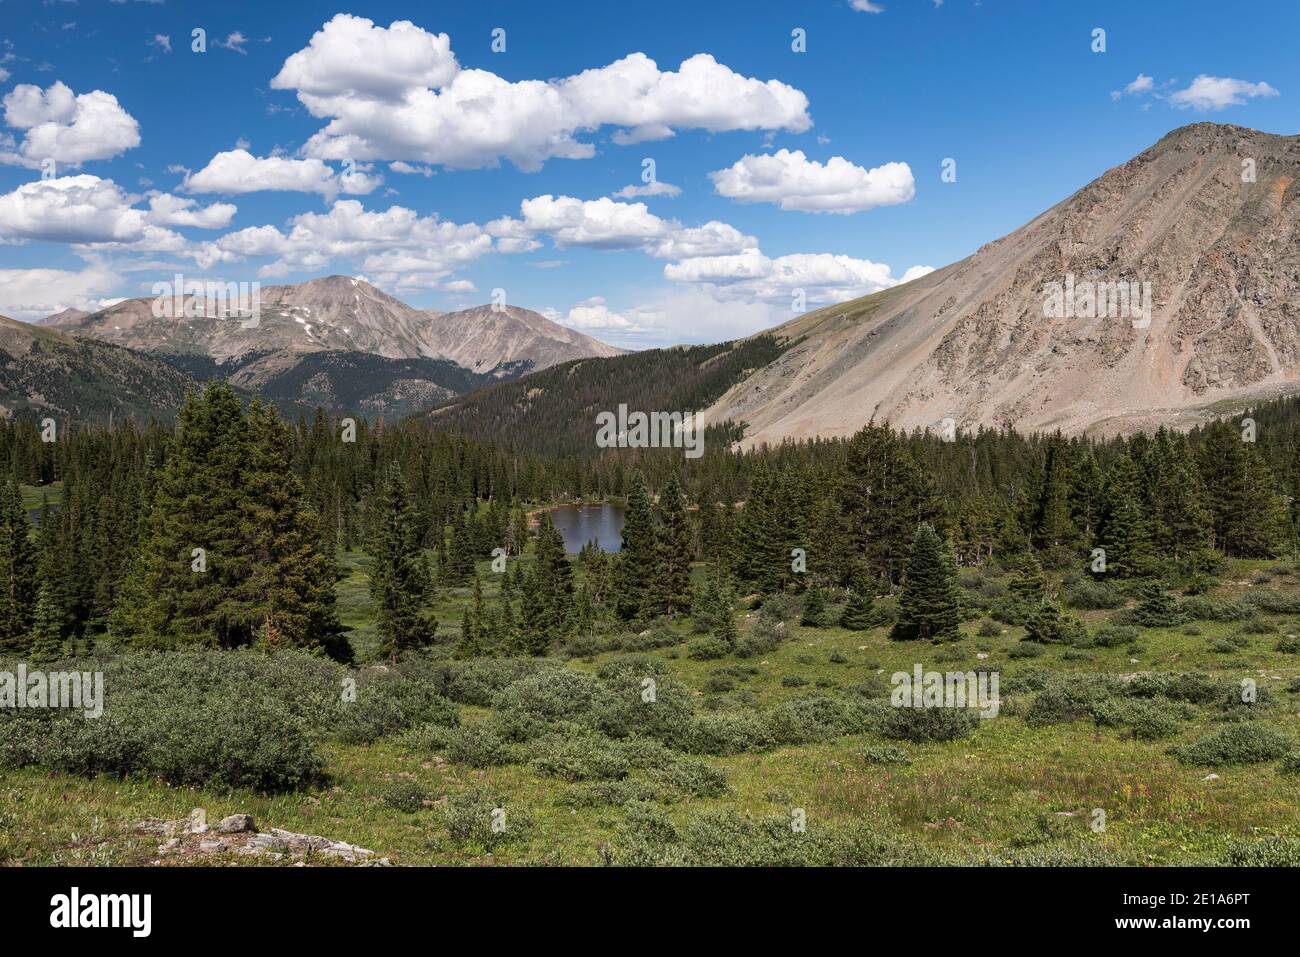 14,196 metri circa si trova Mount Yale, situato nella Collegiate Peaks Range all'interno della San Isabel National Forest, Colorado. Foto Stock